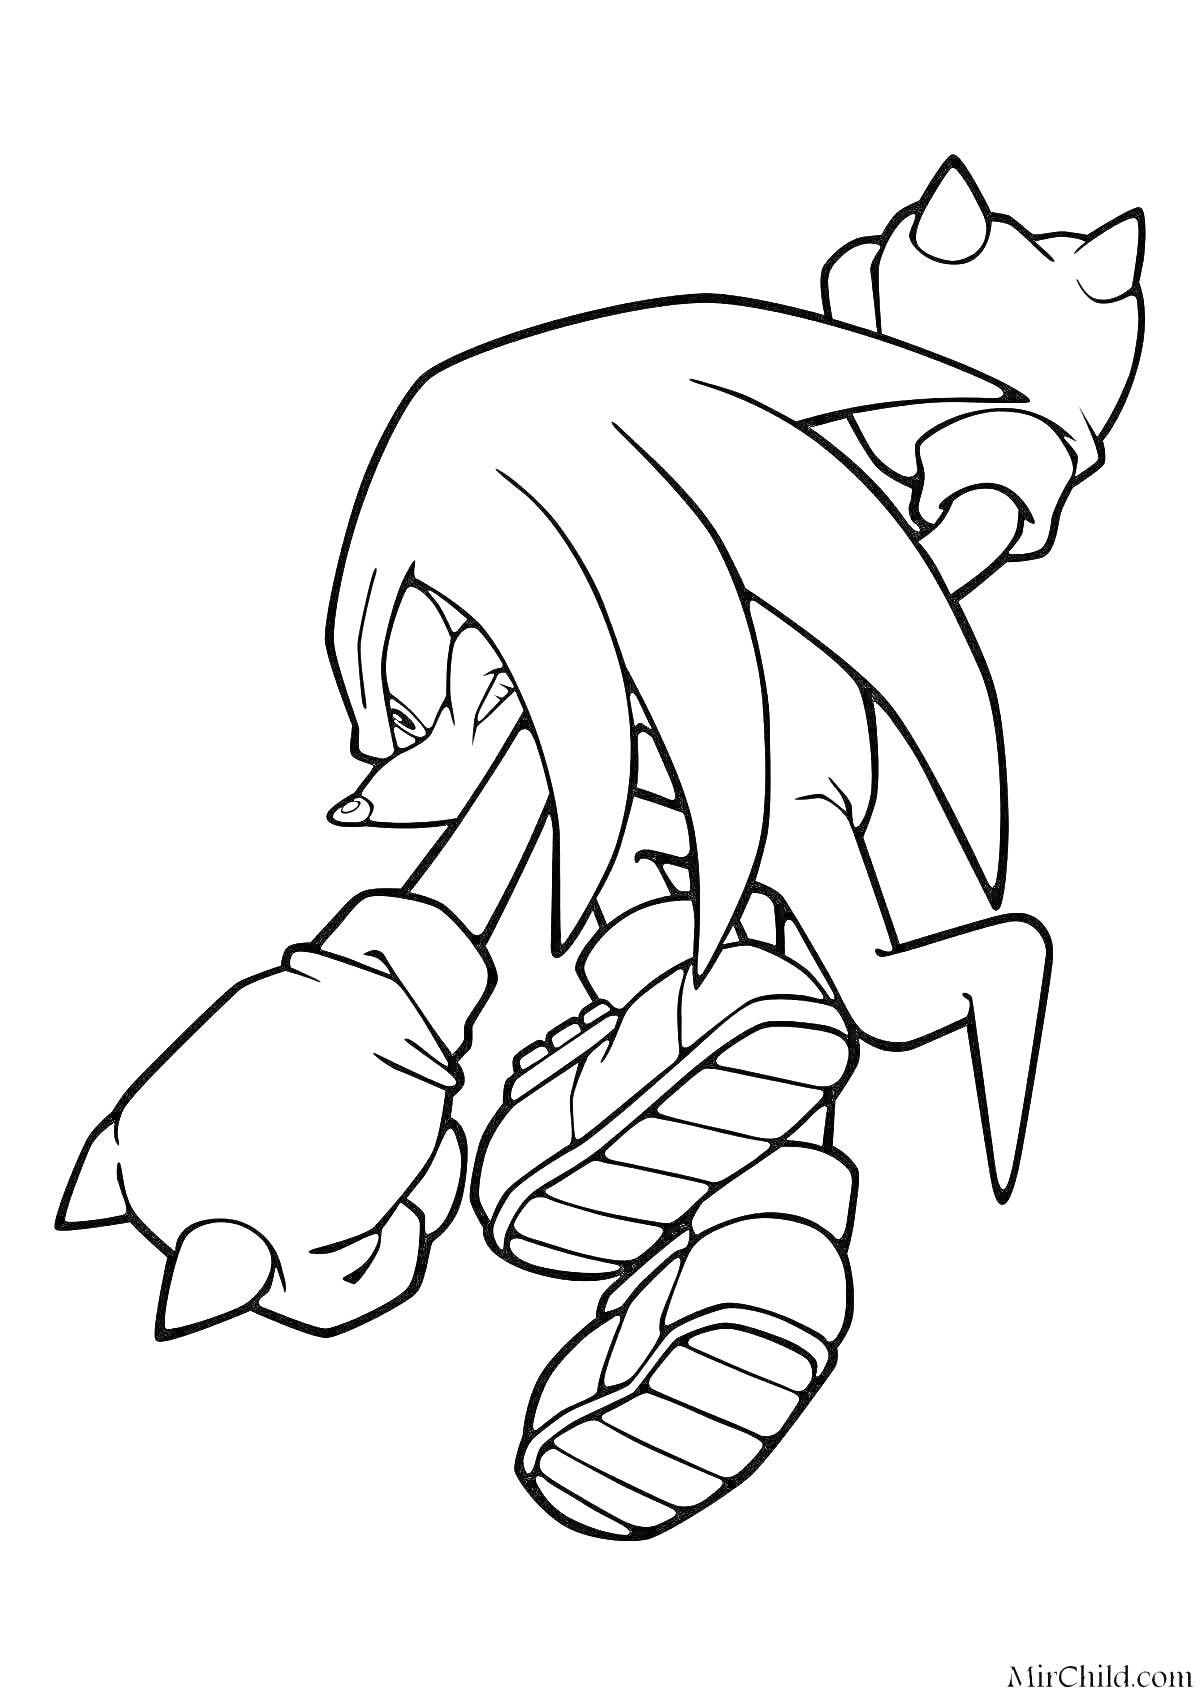 Наклз, один из персонажей из серии Sonic the Hedgehog, в боевой позе